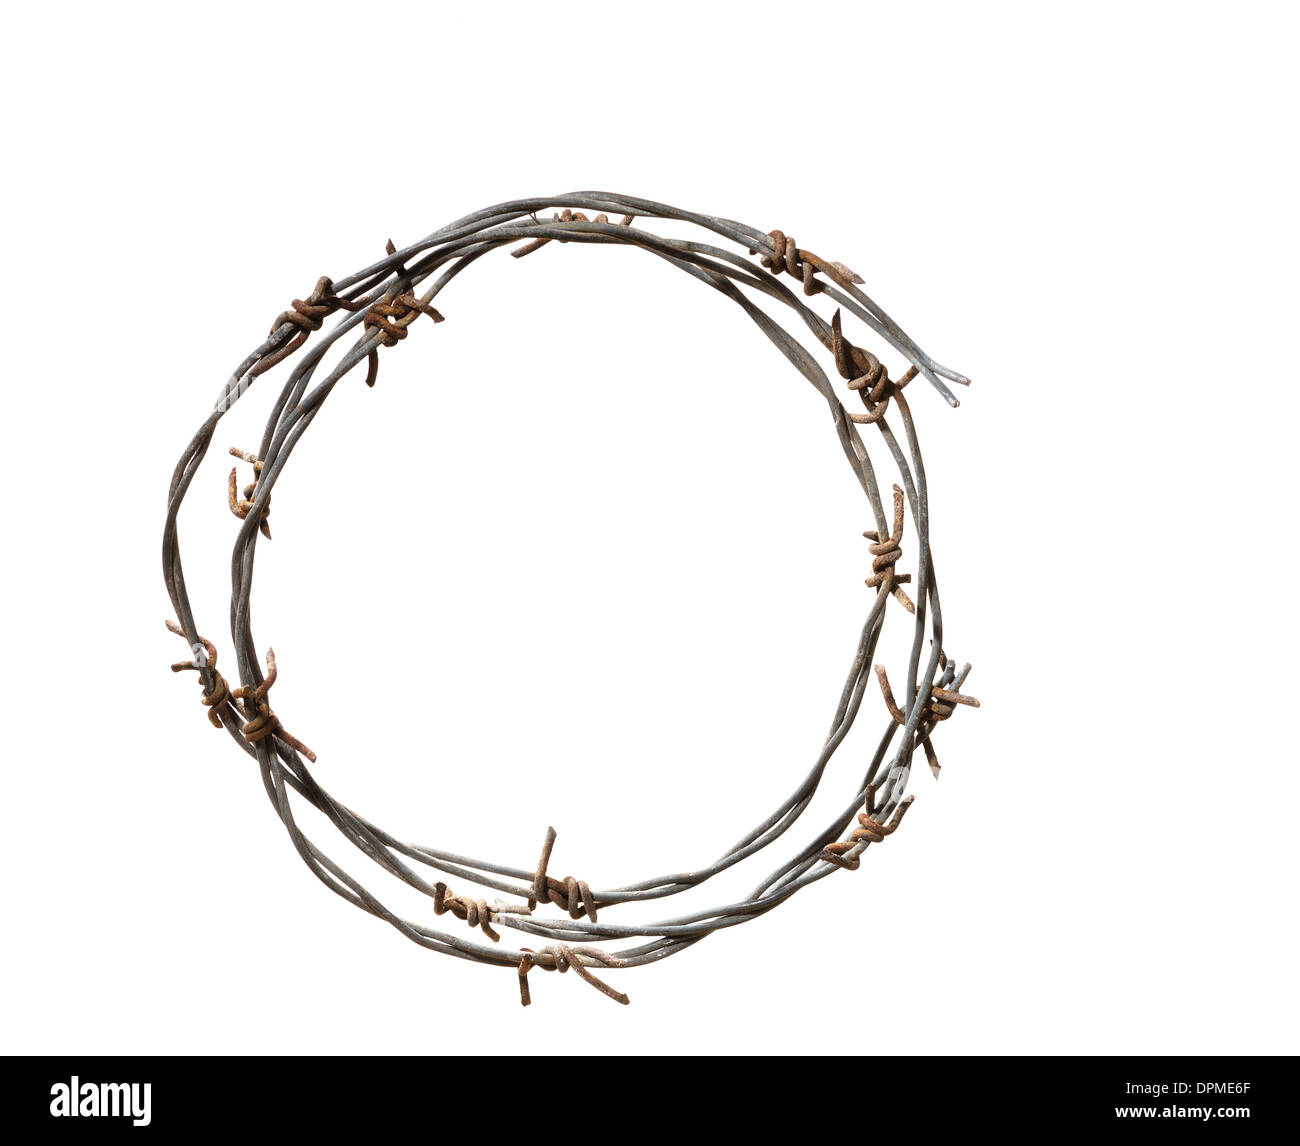 Barbed wire crown Banque d'images détourées - Alamy